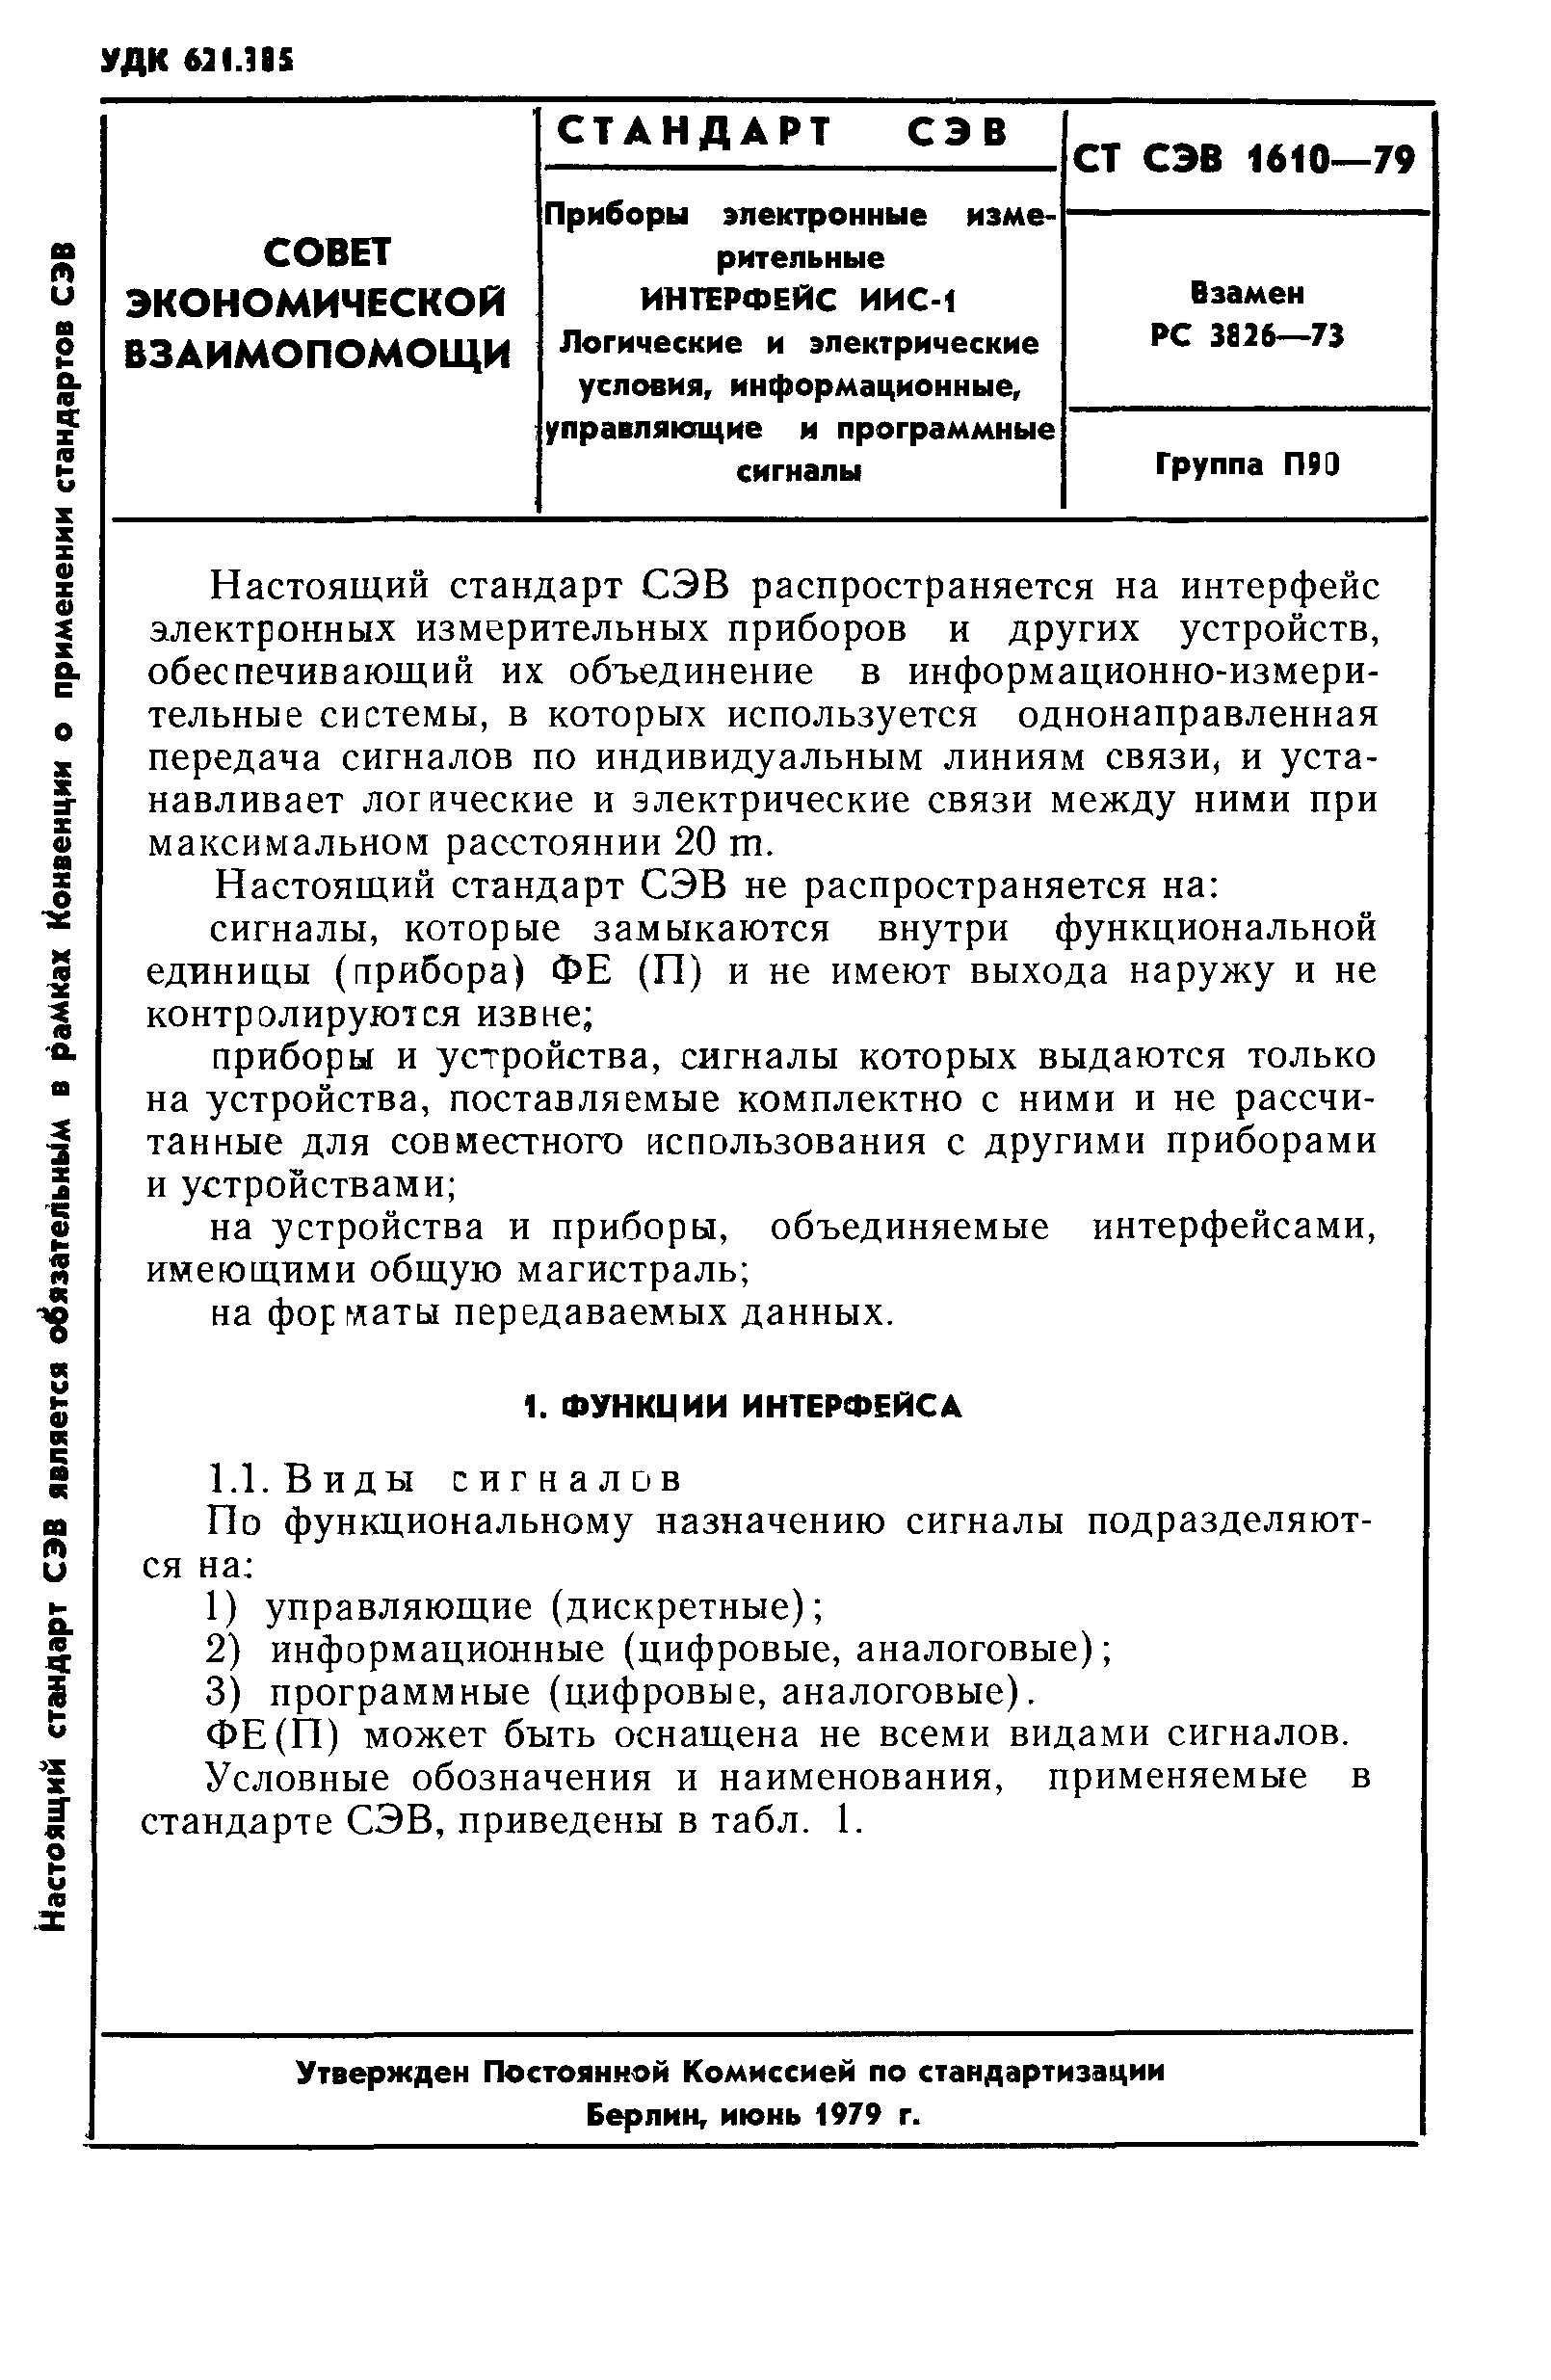 СТ СЭВ 1610-79